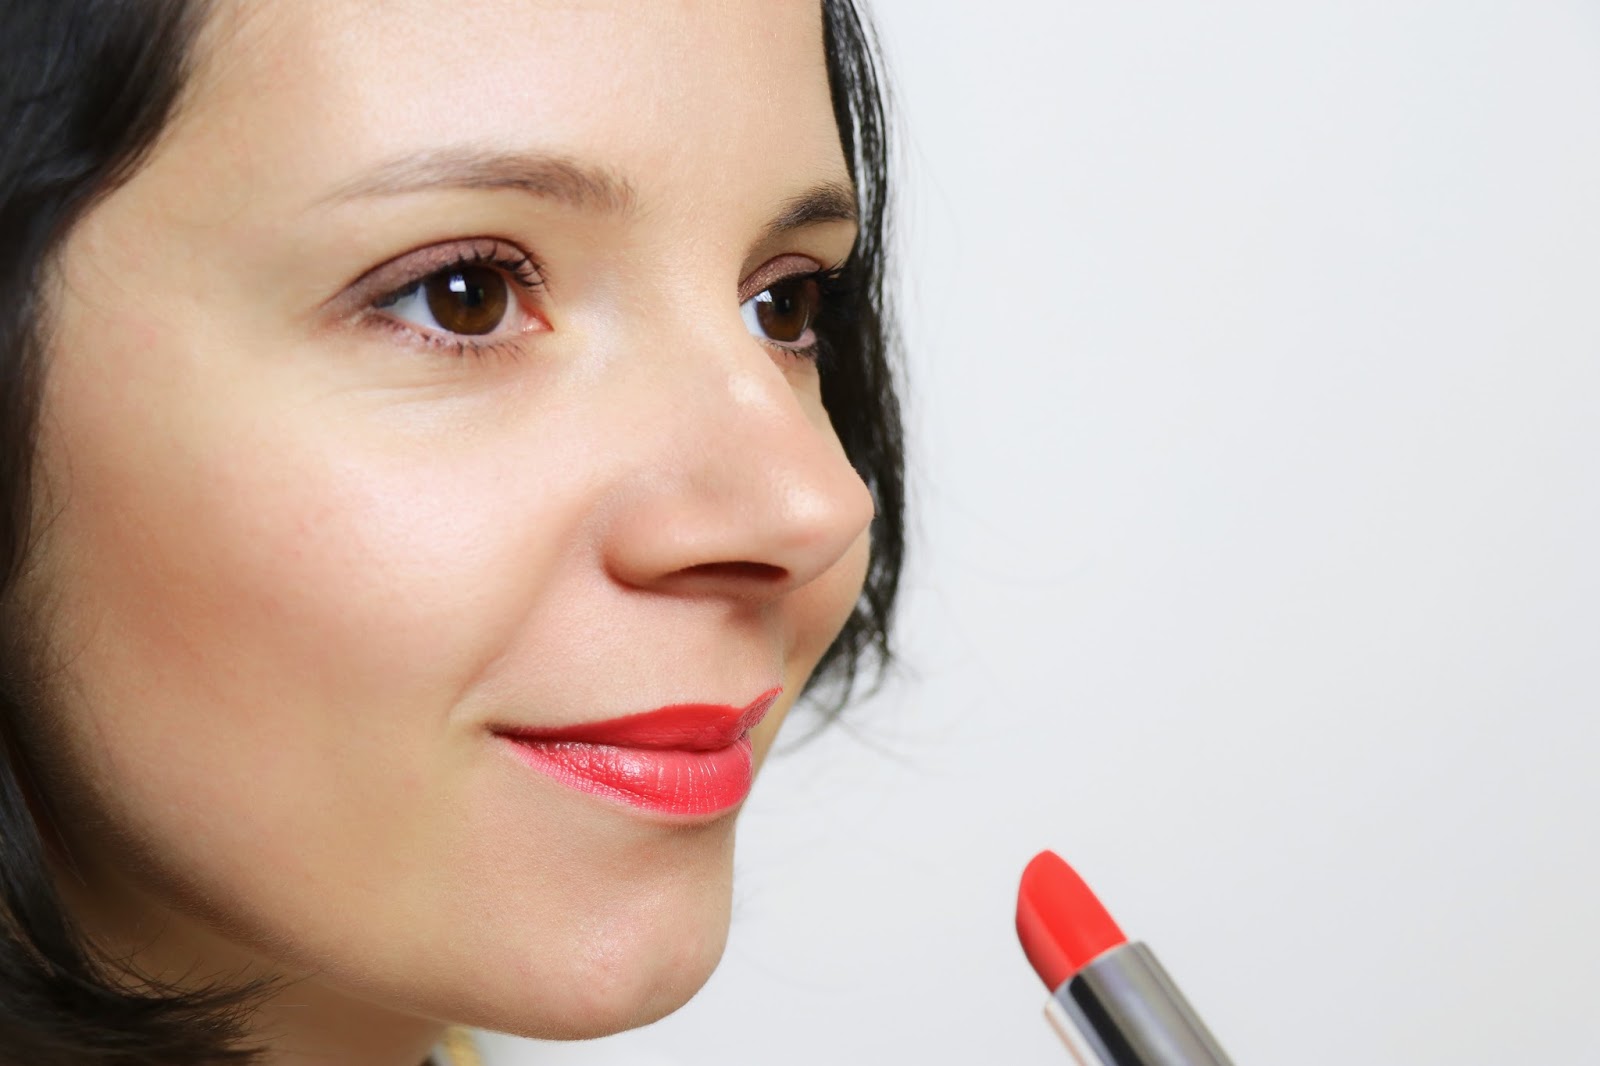 les gommettes de melo gommette artdeco maquillage makeup rouge a levres ombre 3 couleurs comment porter bronzer astuce tuto tutoriel etape 